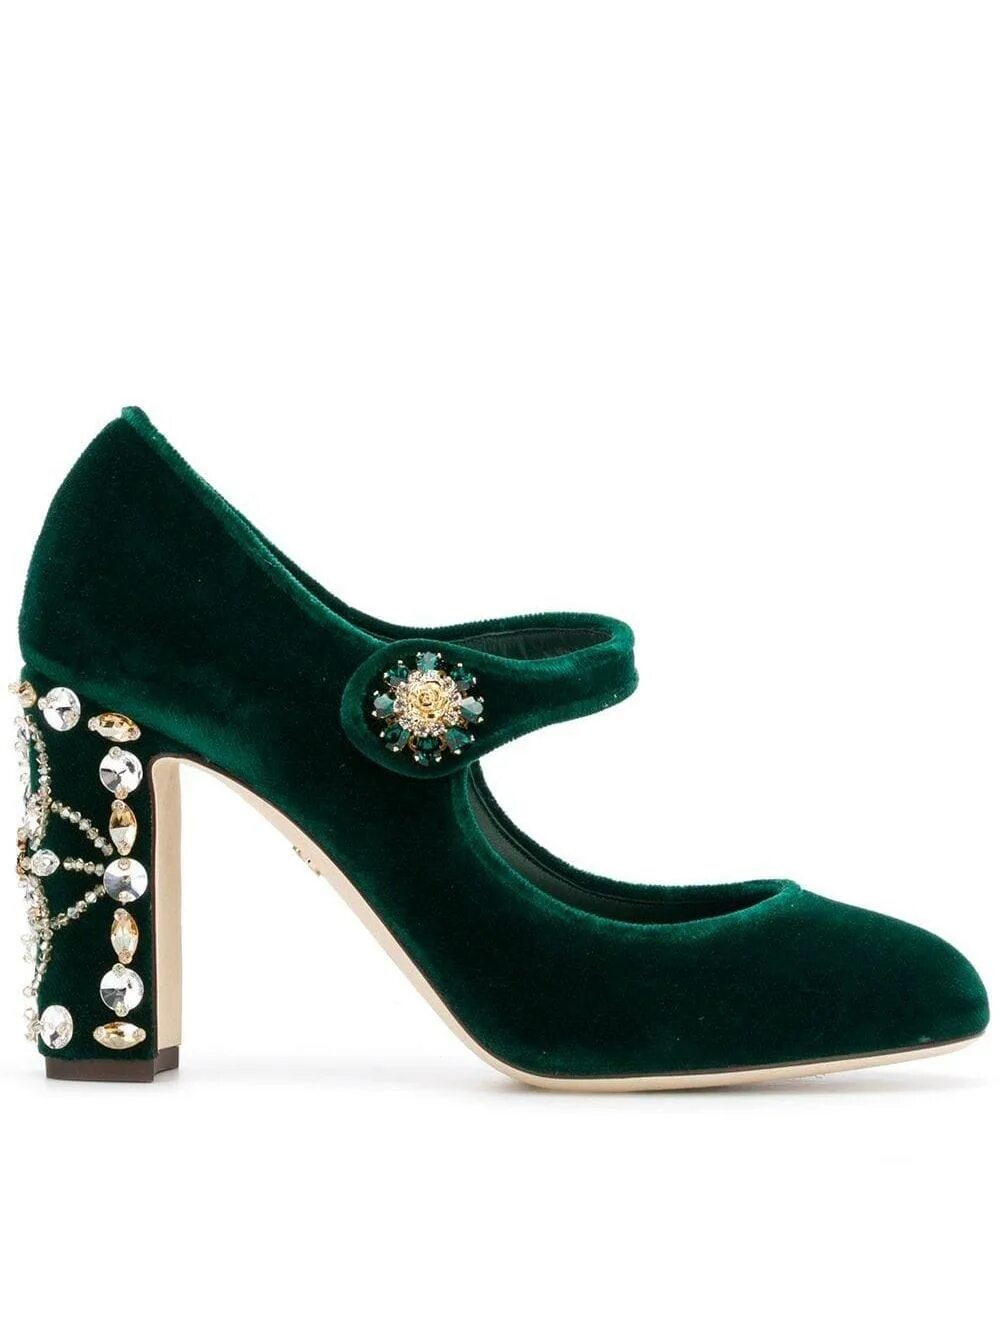 Туфли dolce. Dolce Gabbana Mary Jane туфли. Дольче Габбана туфли зеленые. Дольче Габбана обувь бархатная.